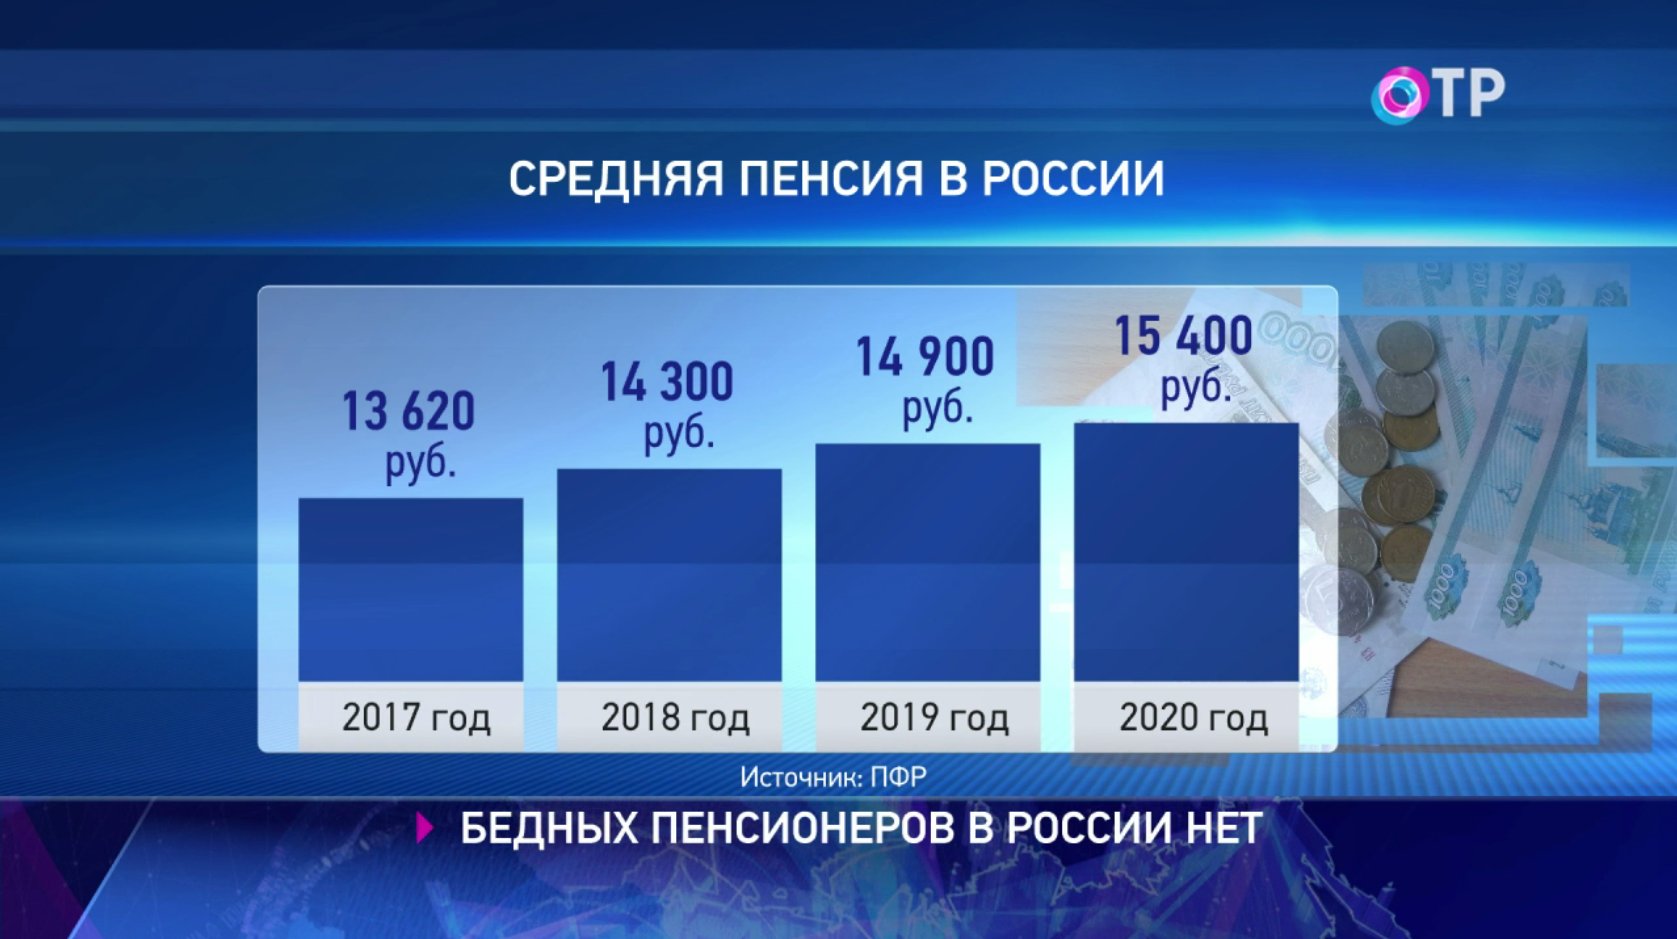 Максимальный размер пенсии в россии в 2024. Средняя пенсия в России в 2021. Средний размер пенсии в России в 2021. Средняя пенсия по России в 2021 году. Средний размер пенсии в России в 2020 году.